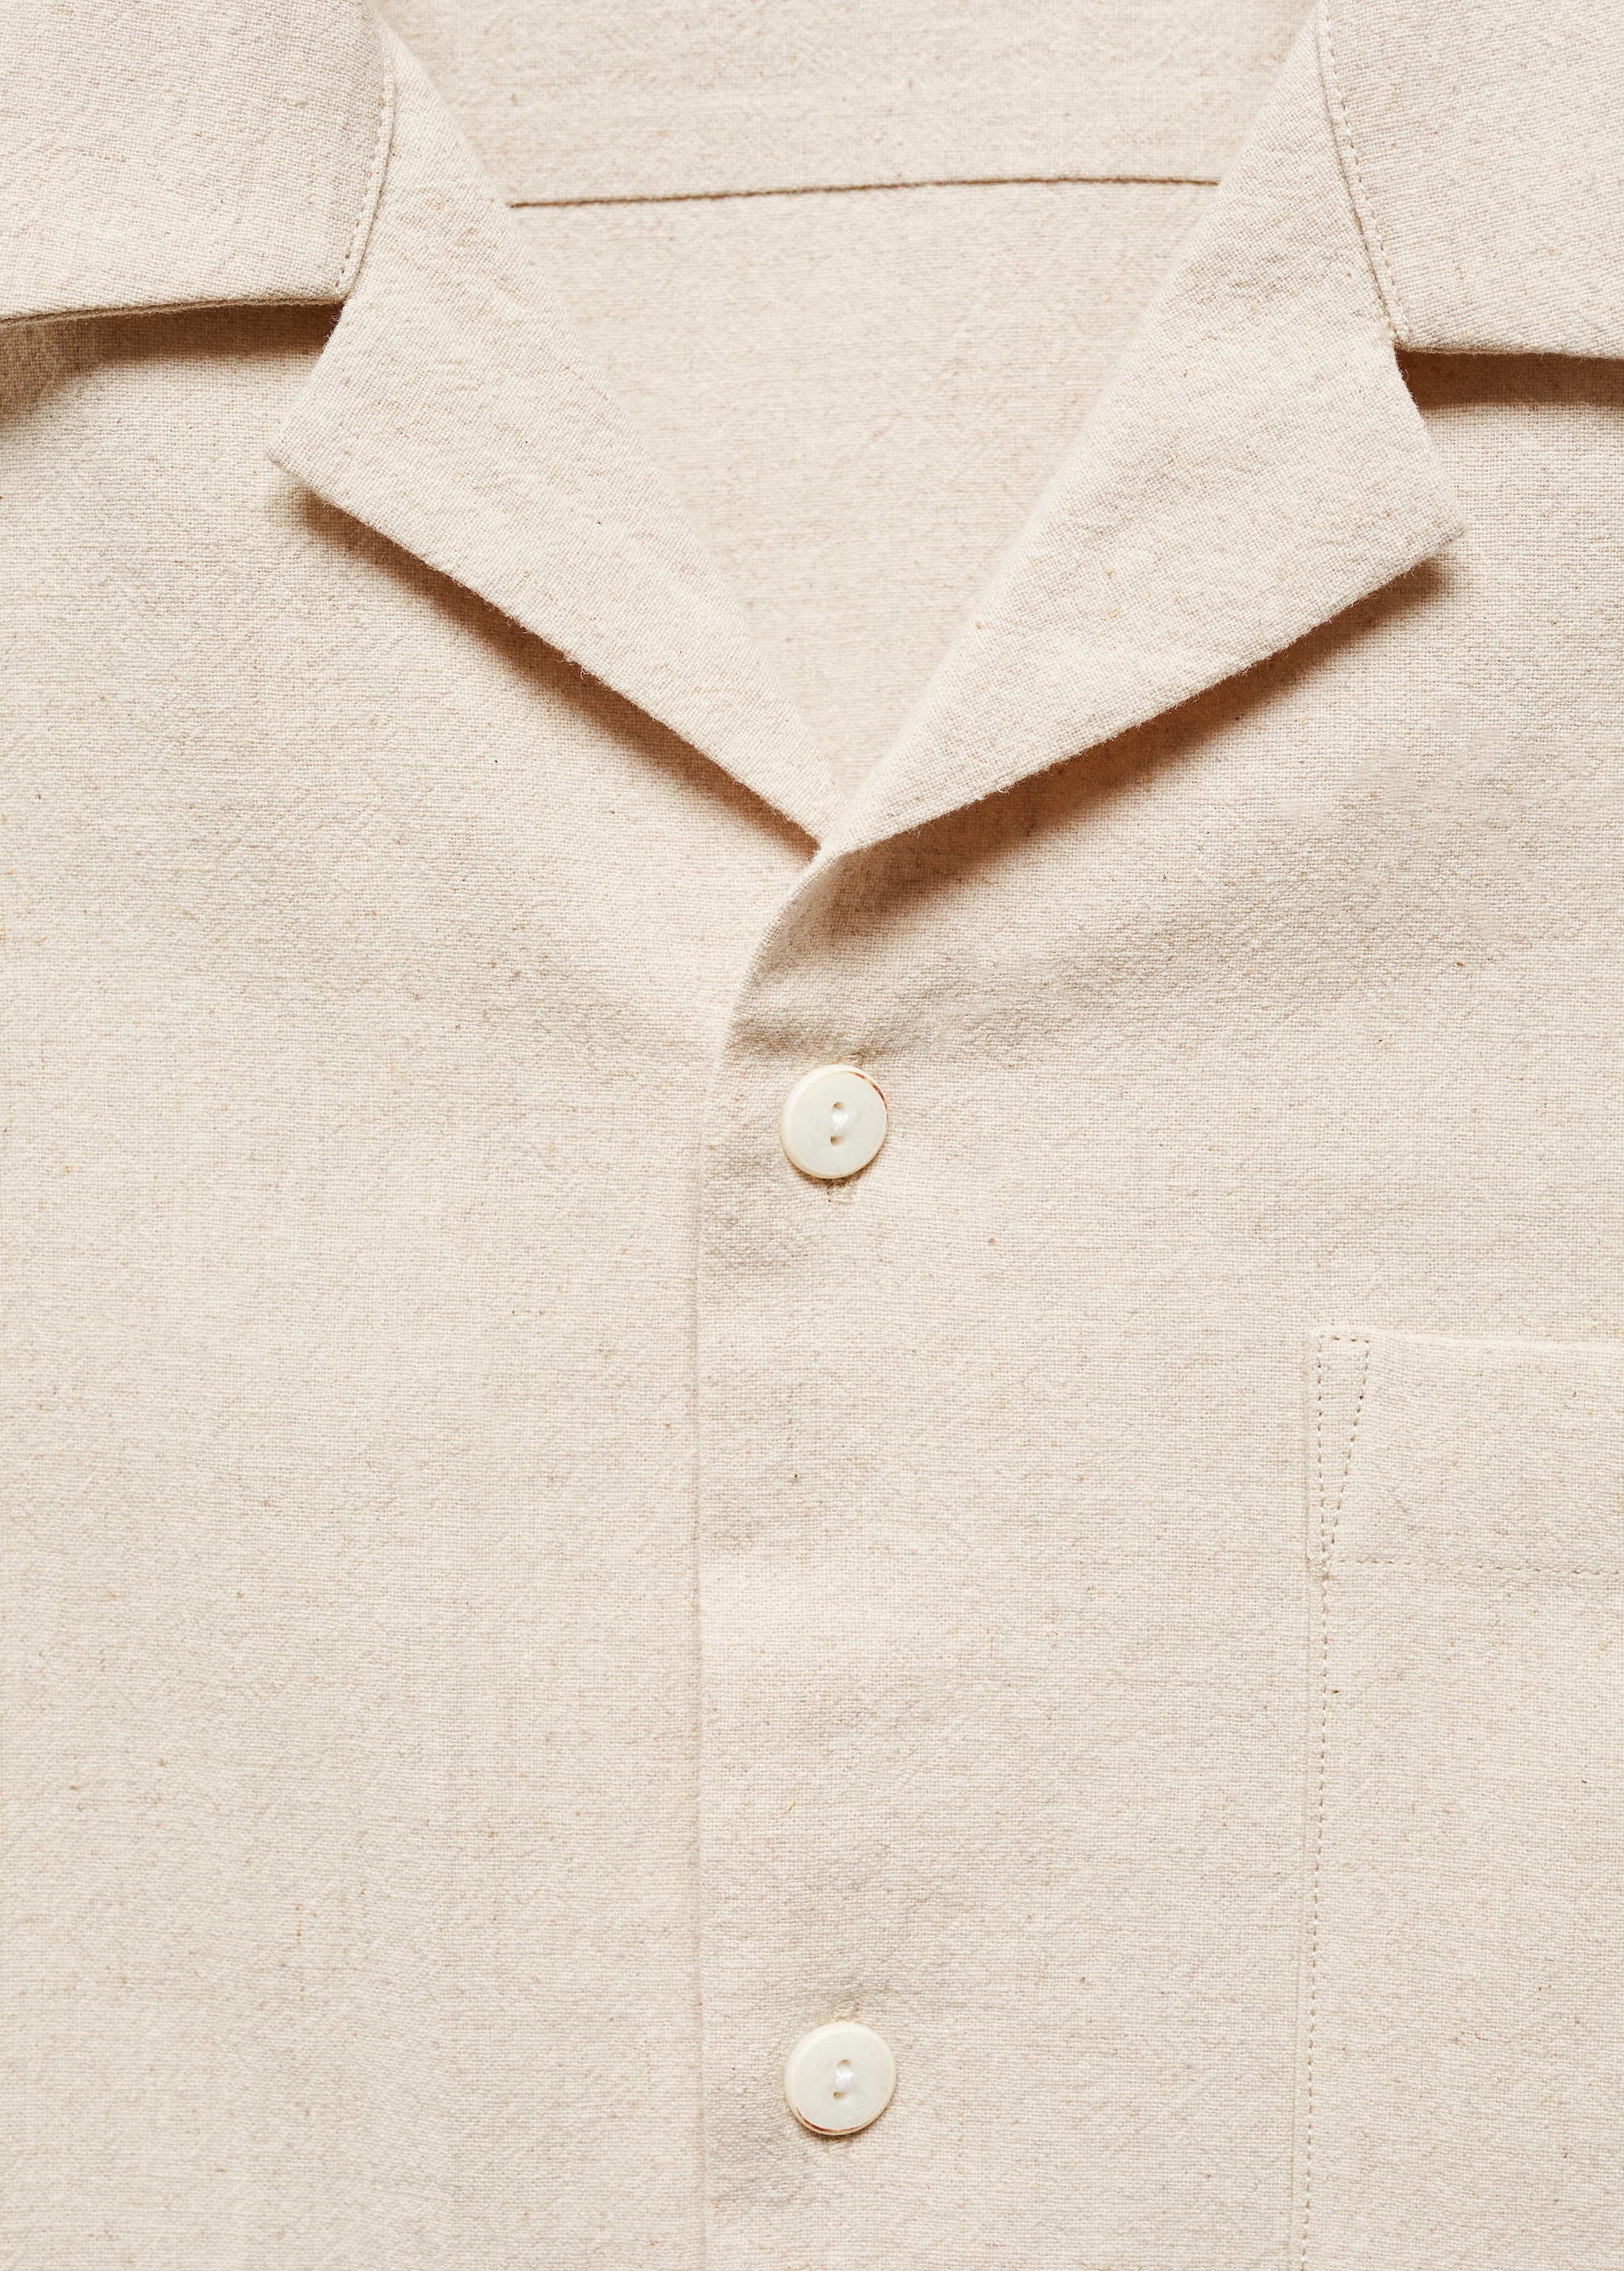 Camisa lino cuello bowling bolsillo - Detalle del artículo 8